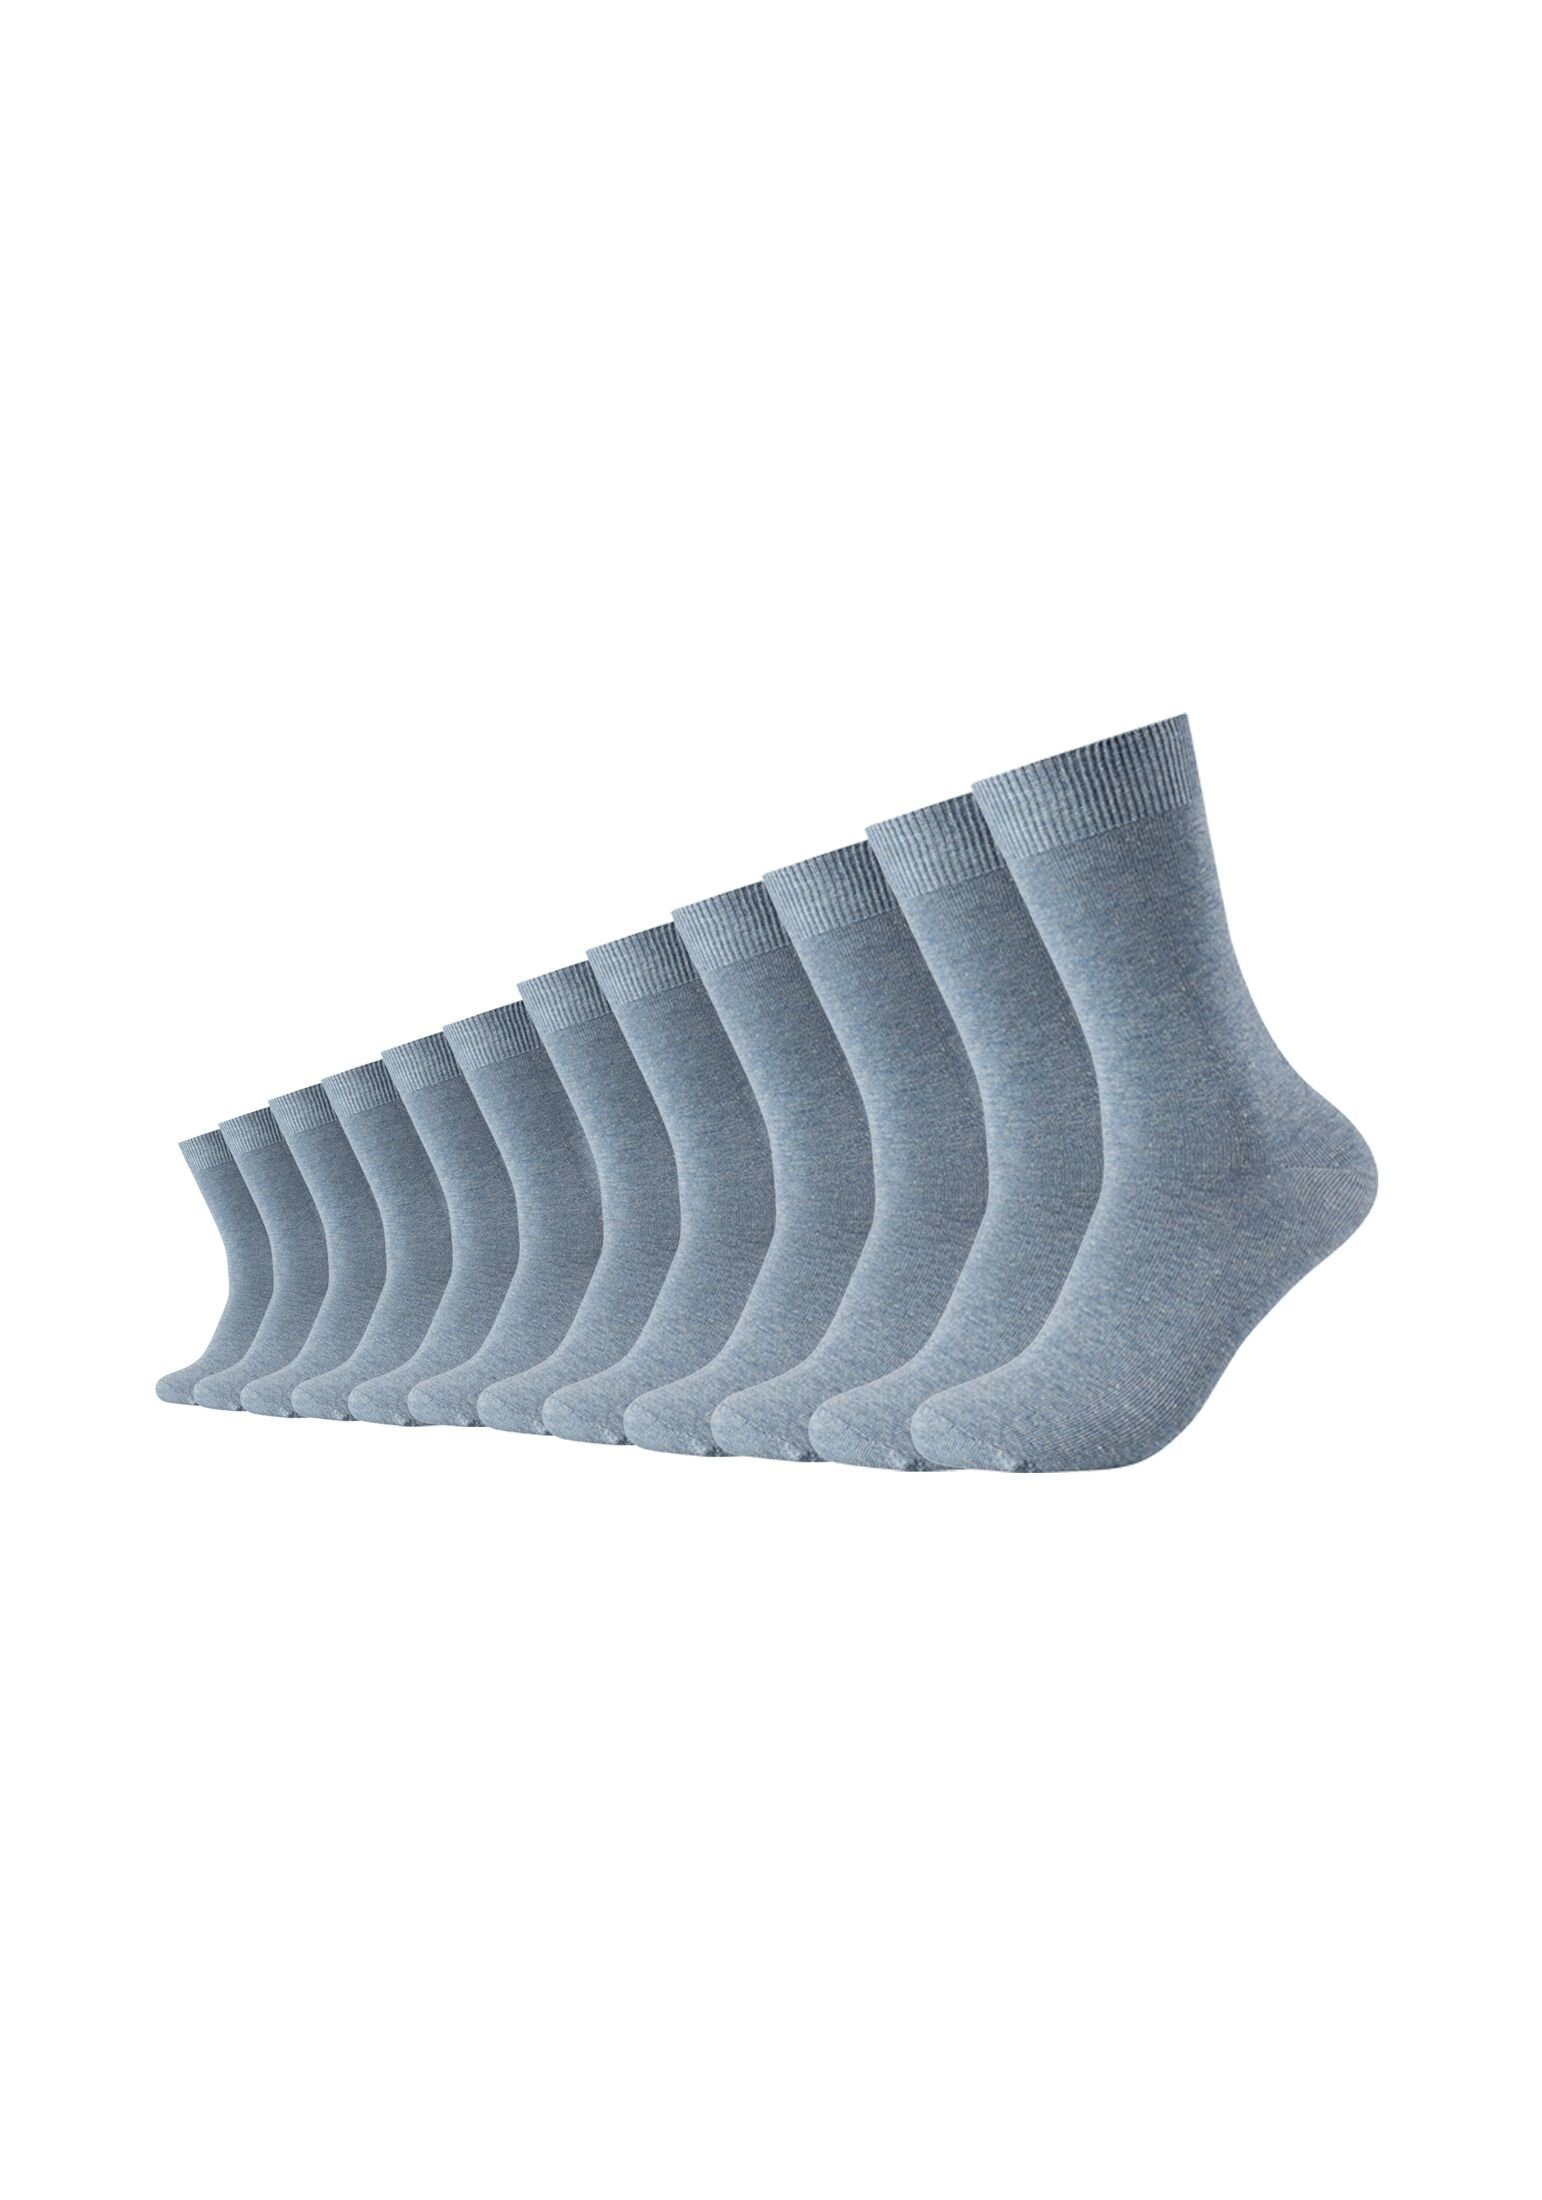 Camano Socken Socken 12er Pack stone melange